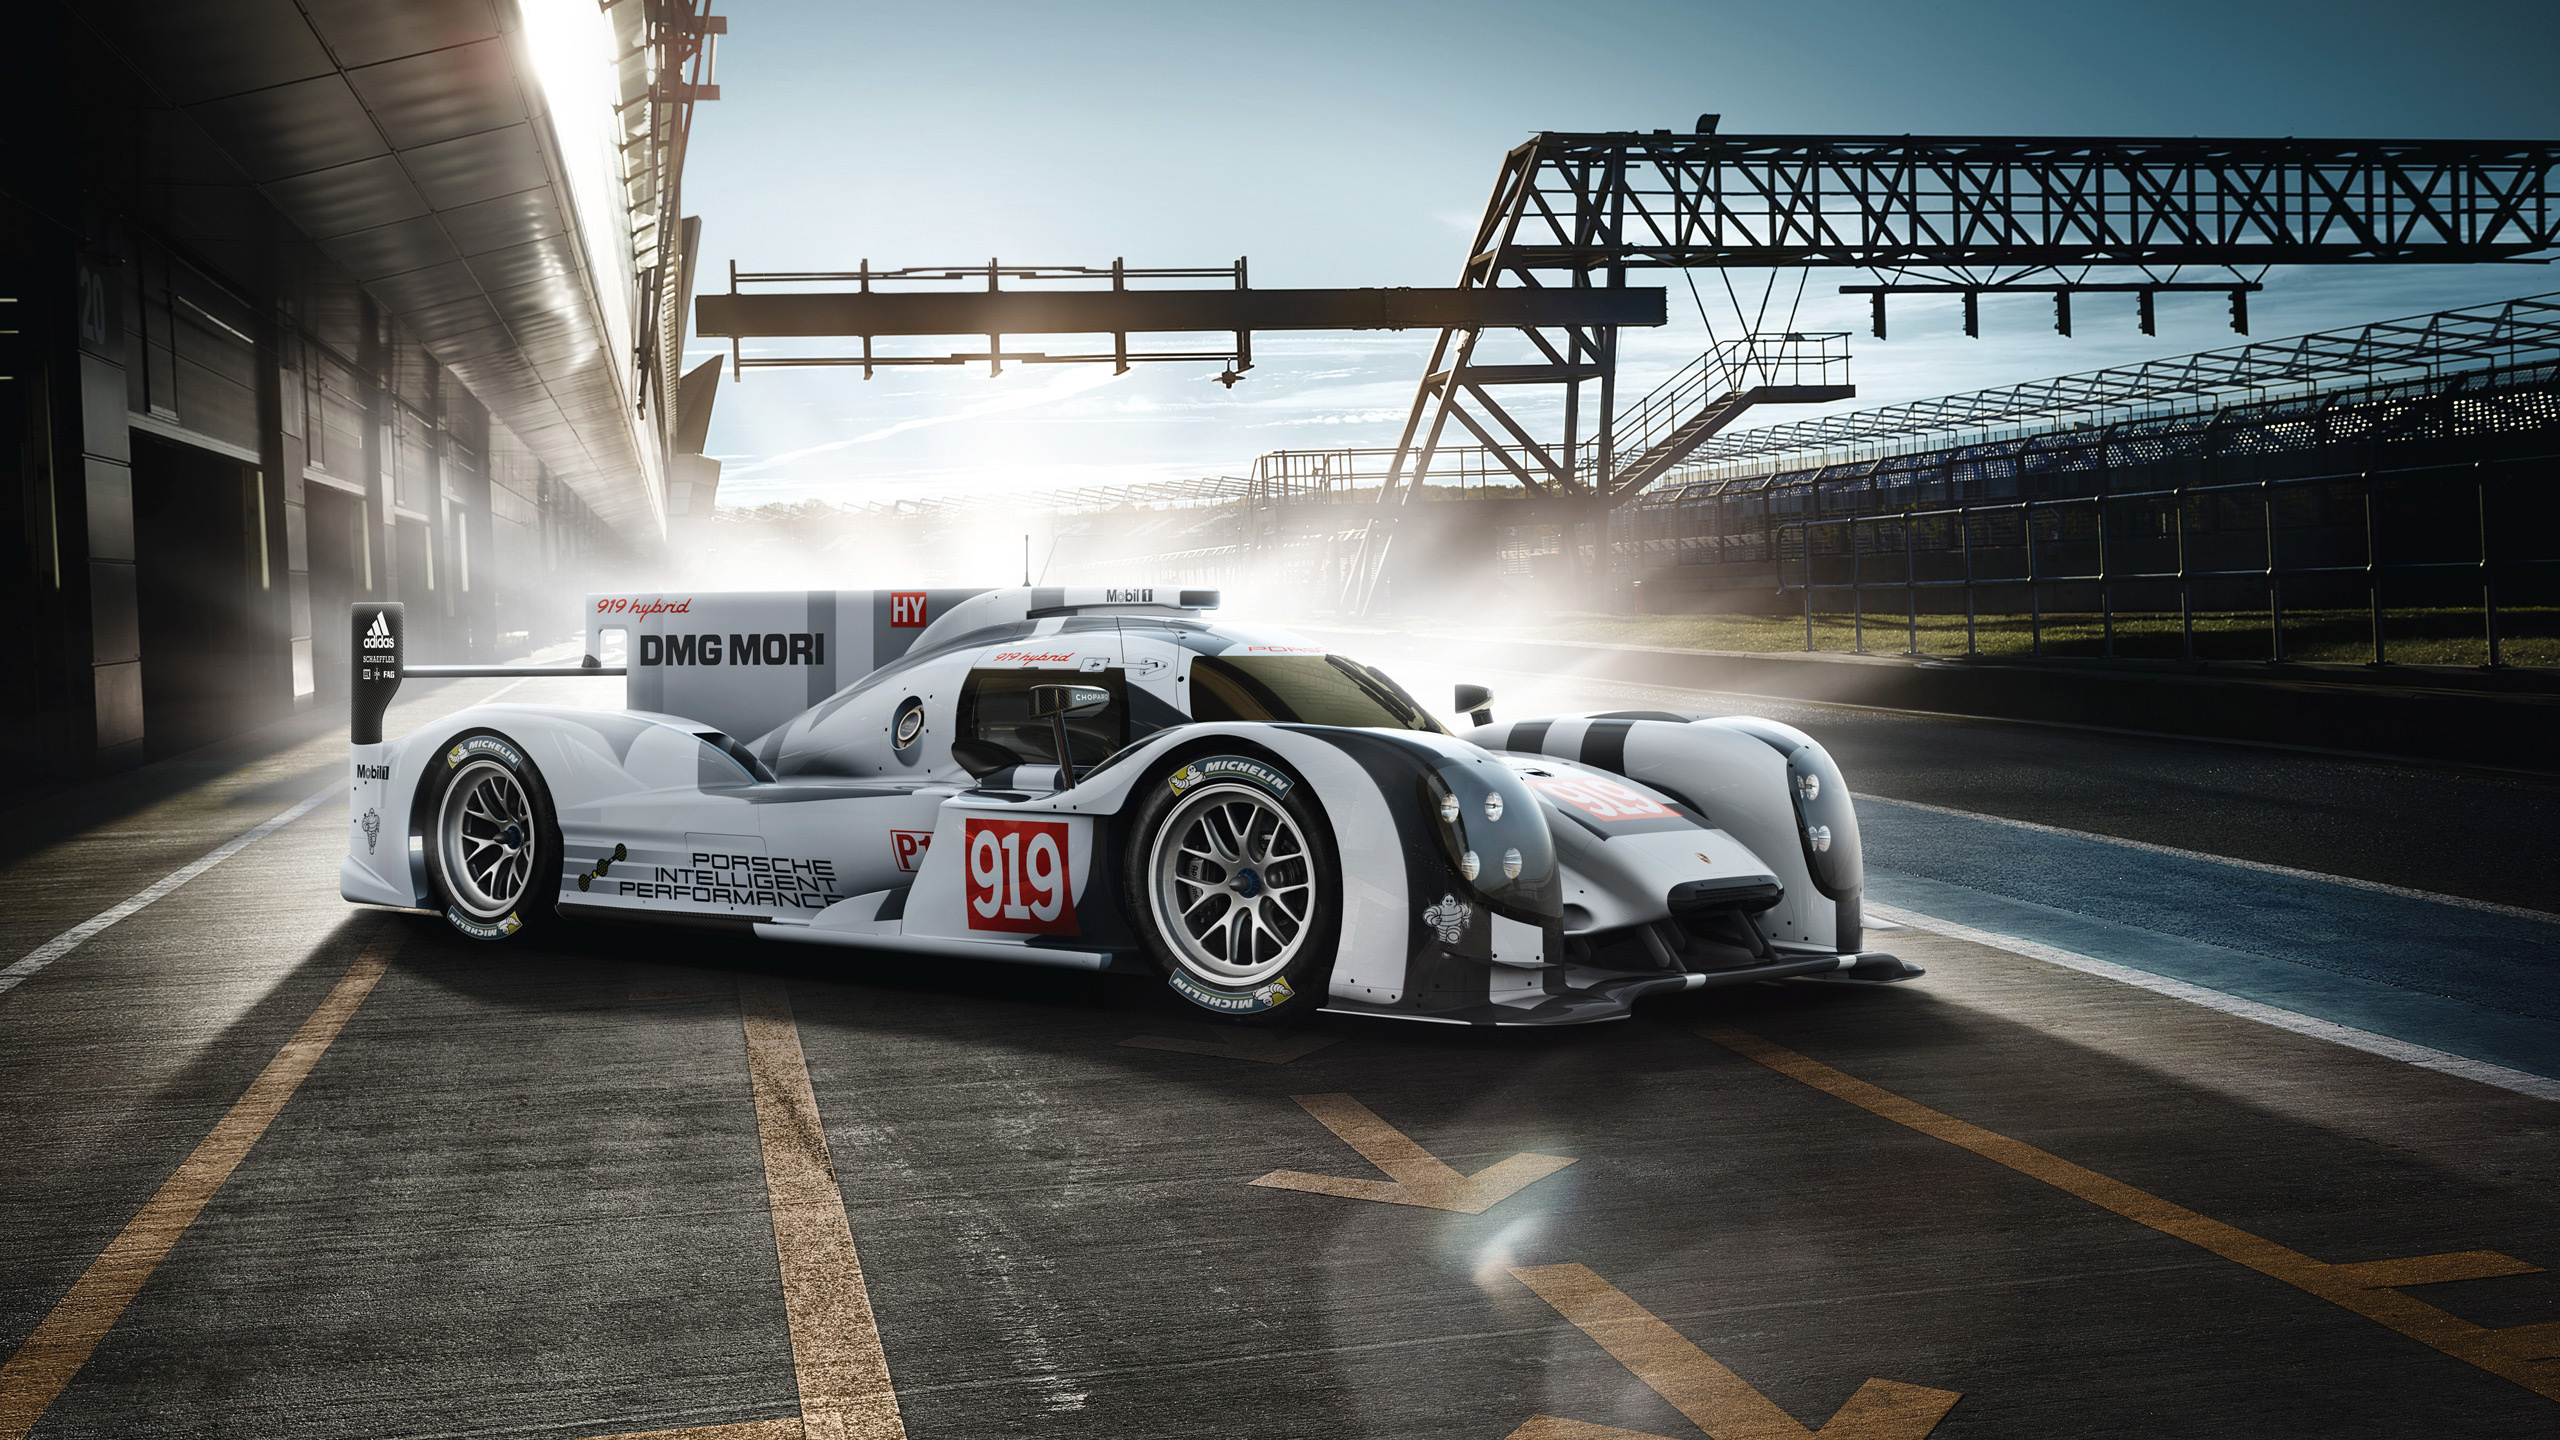 Le Mans race, Porsche wallpaper, Impressive design, Automotive excellence, 2560x1440 HD Desktop